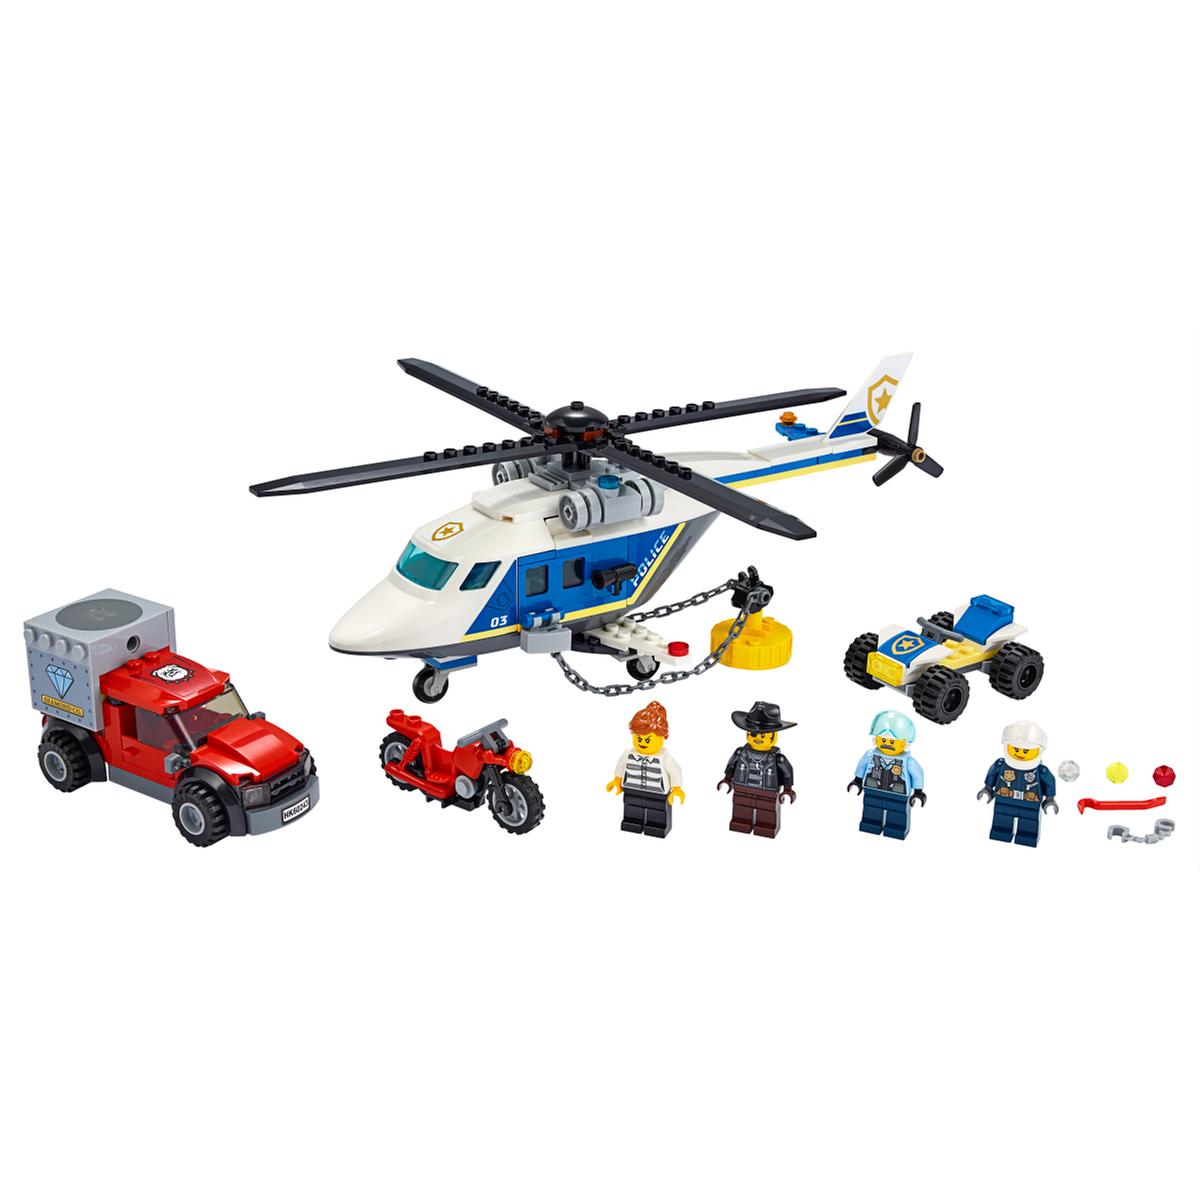 LEGO City - Polícia: Perseguição em Helicóptero - 60243 | LEGO CITY | Loja  de brinquedos e videojogos Online Toysrus